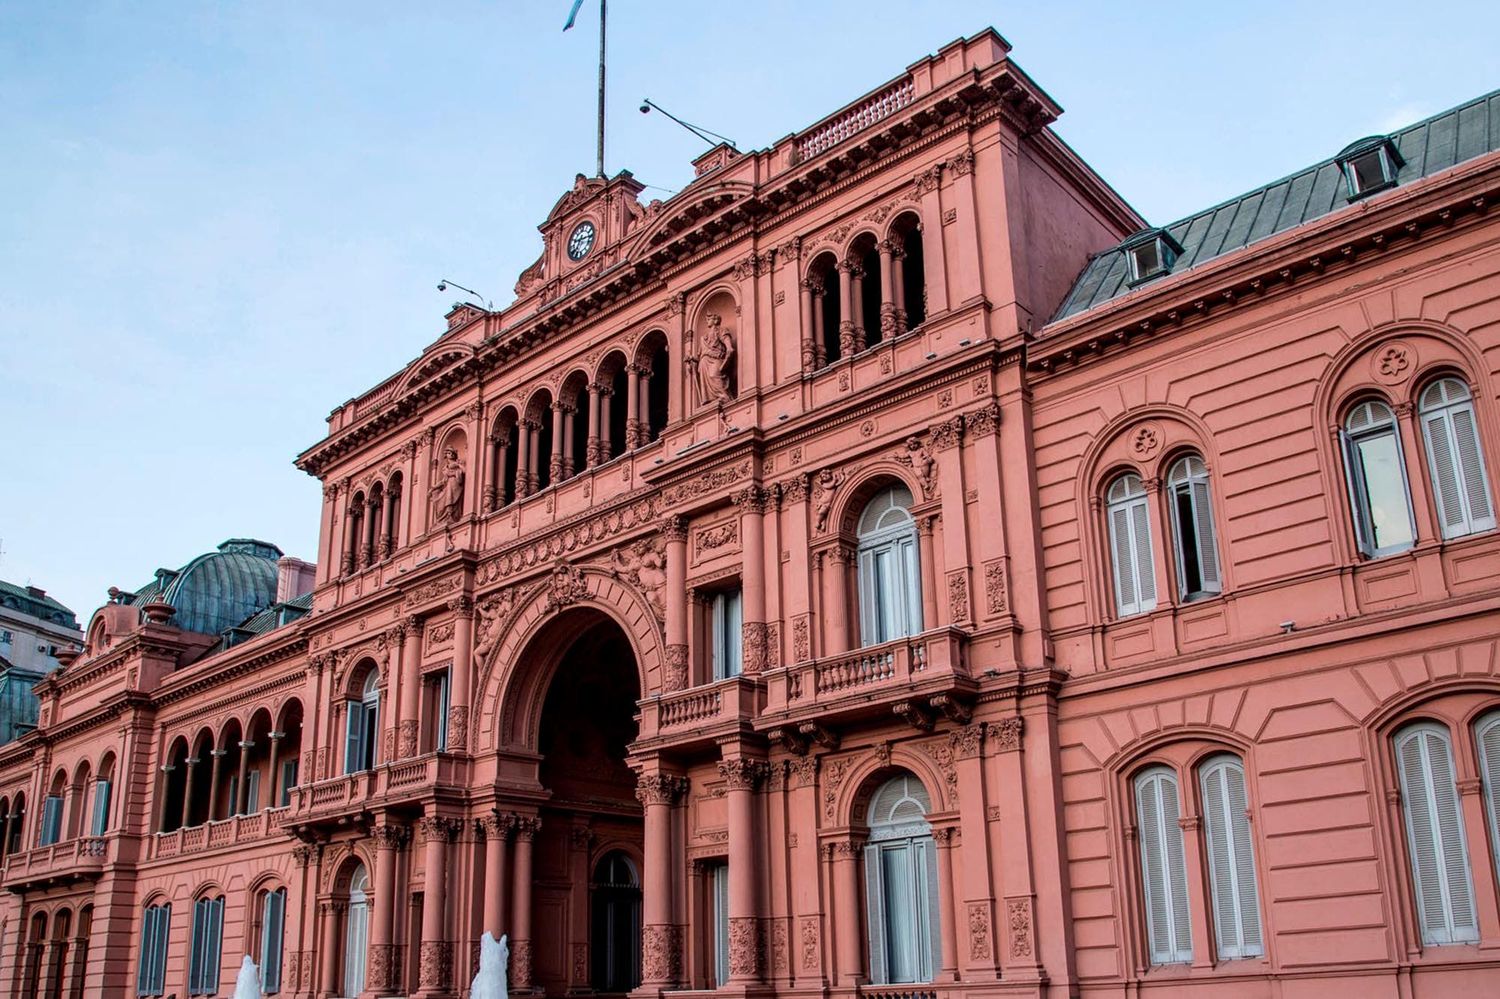 El Gobierno Nacional le respondió a la Corte Suprema y aseguró que "trabaja priorizando la salud y la vida de argentinos"